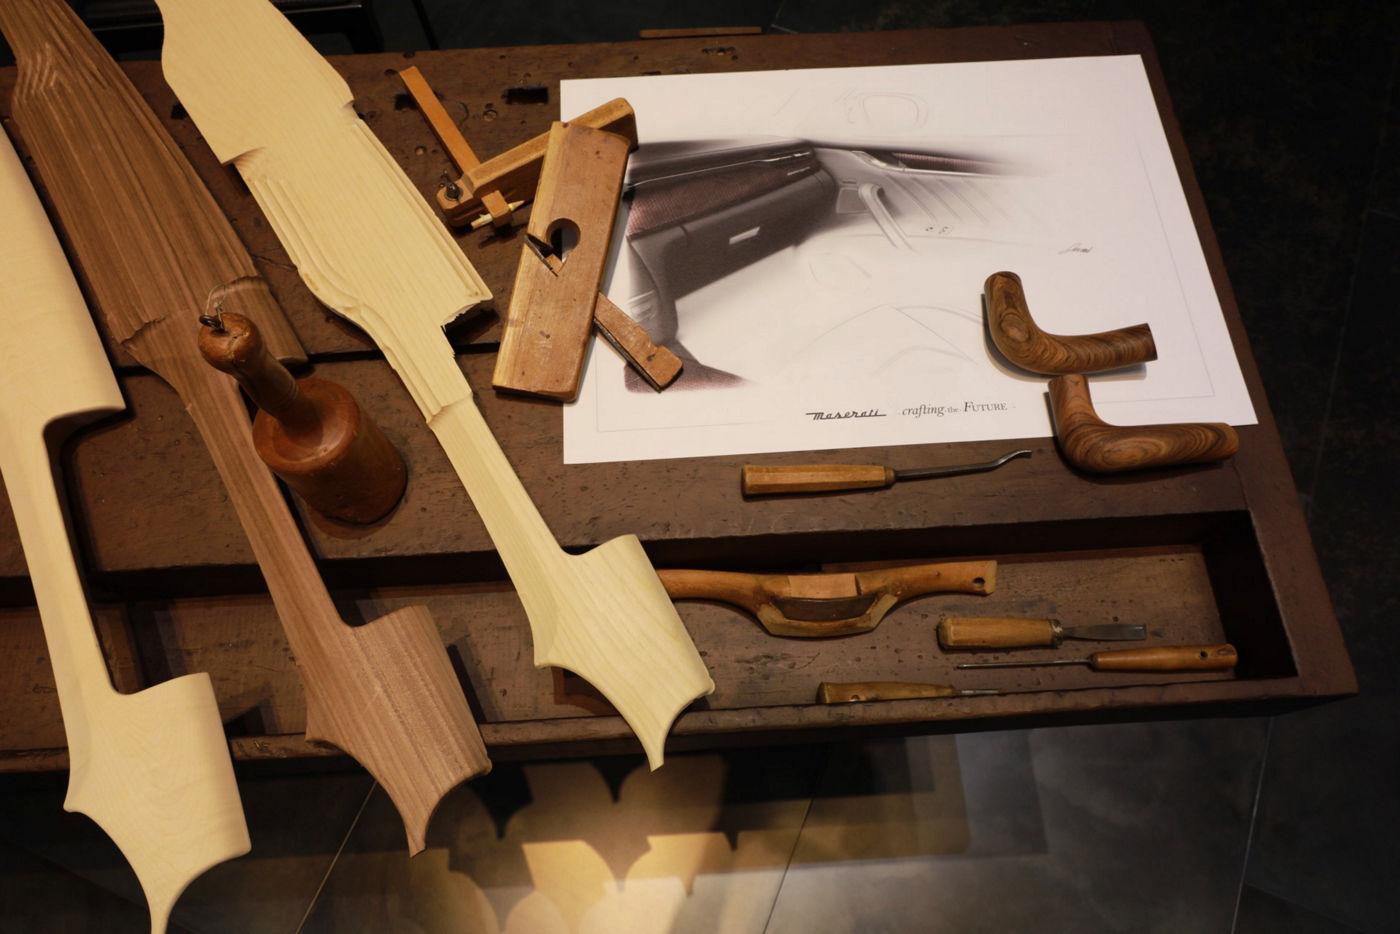 Maserati Crafting Italian Experiences: Holzverarbeitung im Atelier von Giorgetti